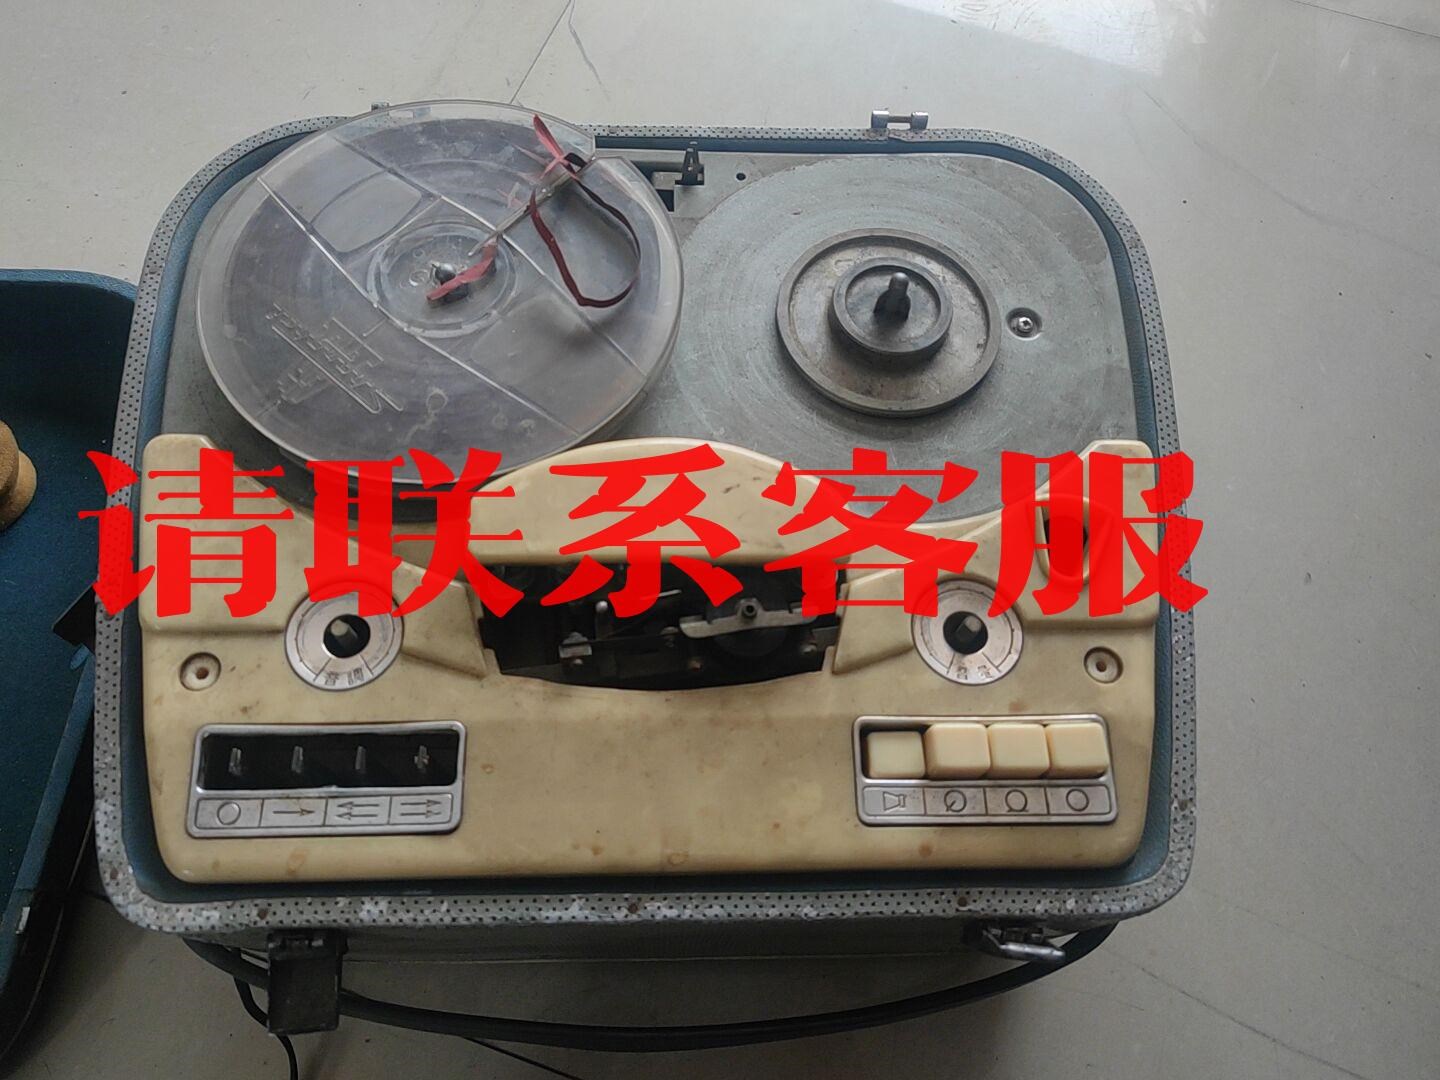 议价:L601开盘机 上海录音器材厂 收来的 成色见图 好坏不知